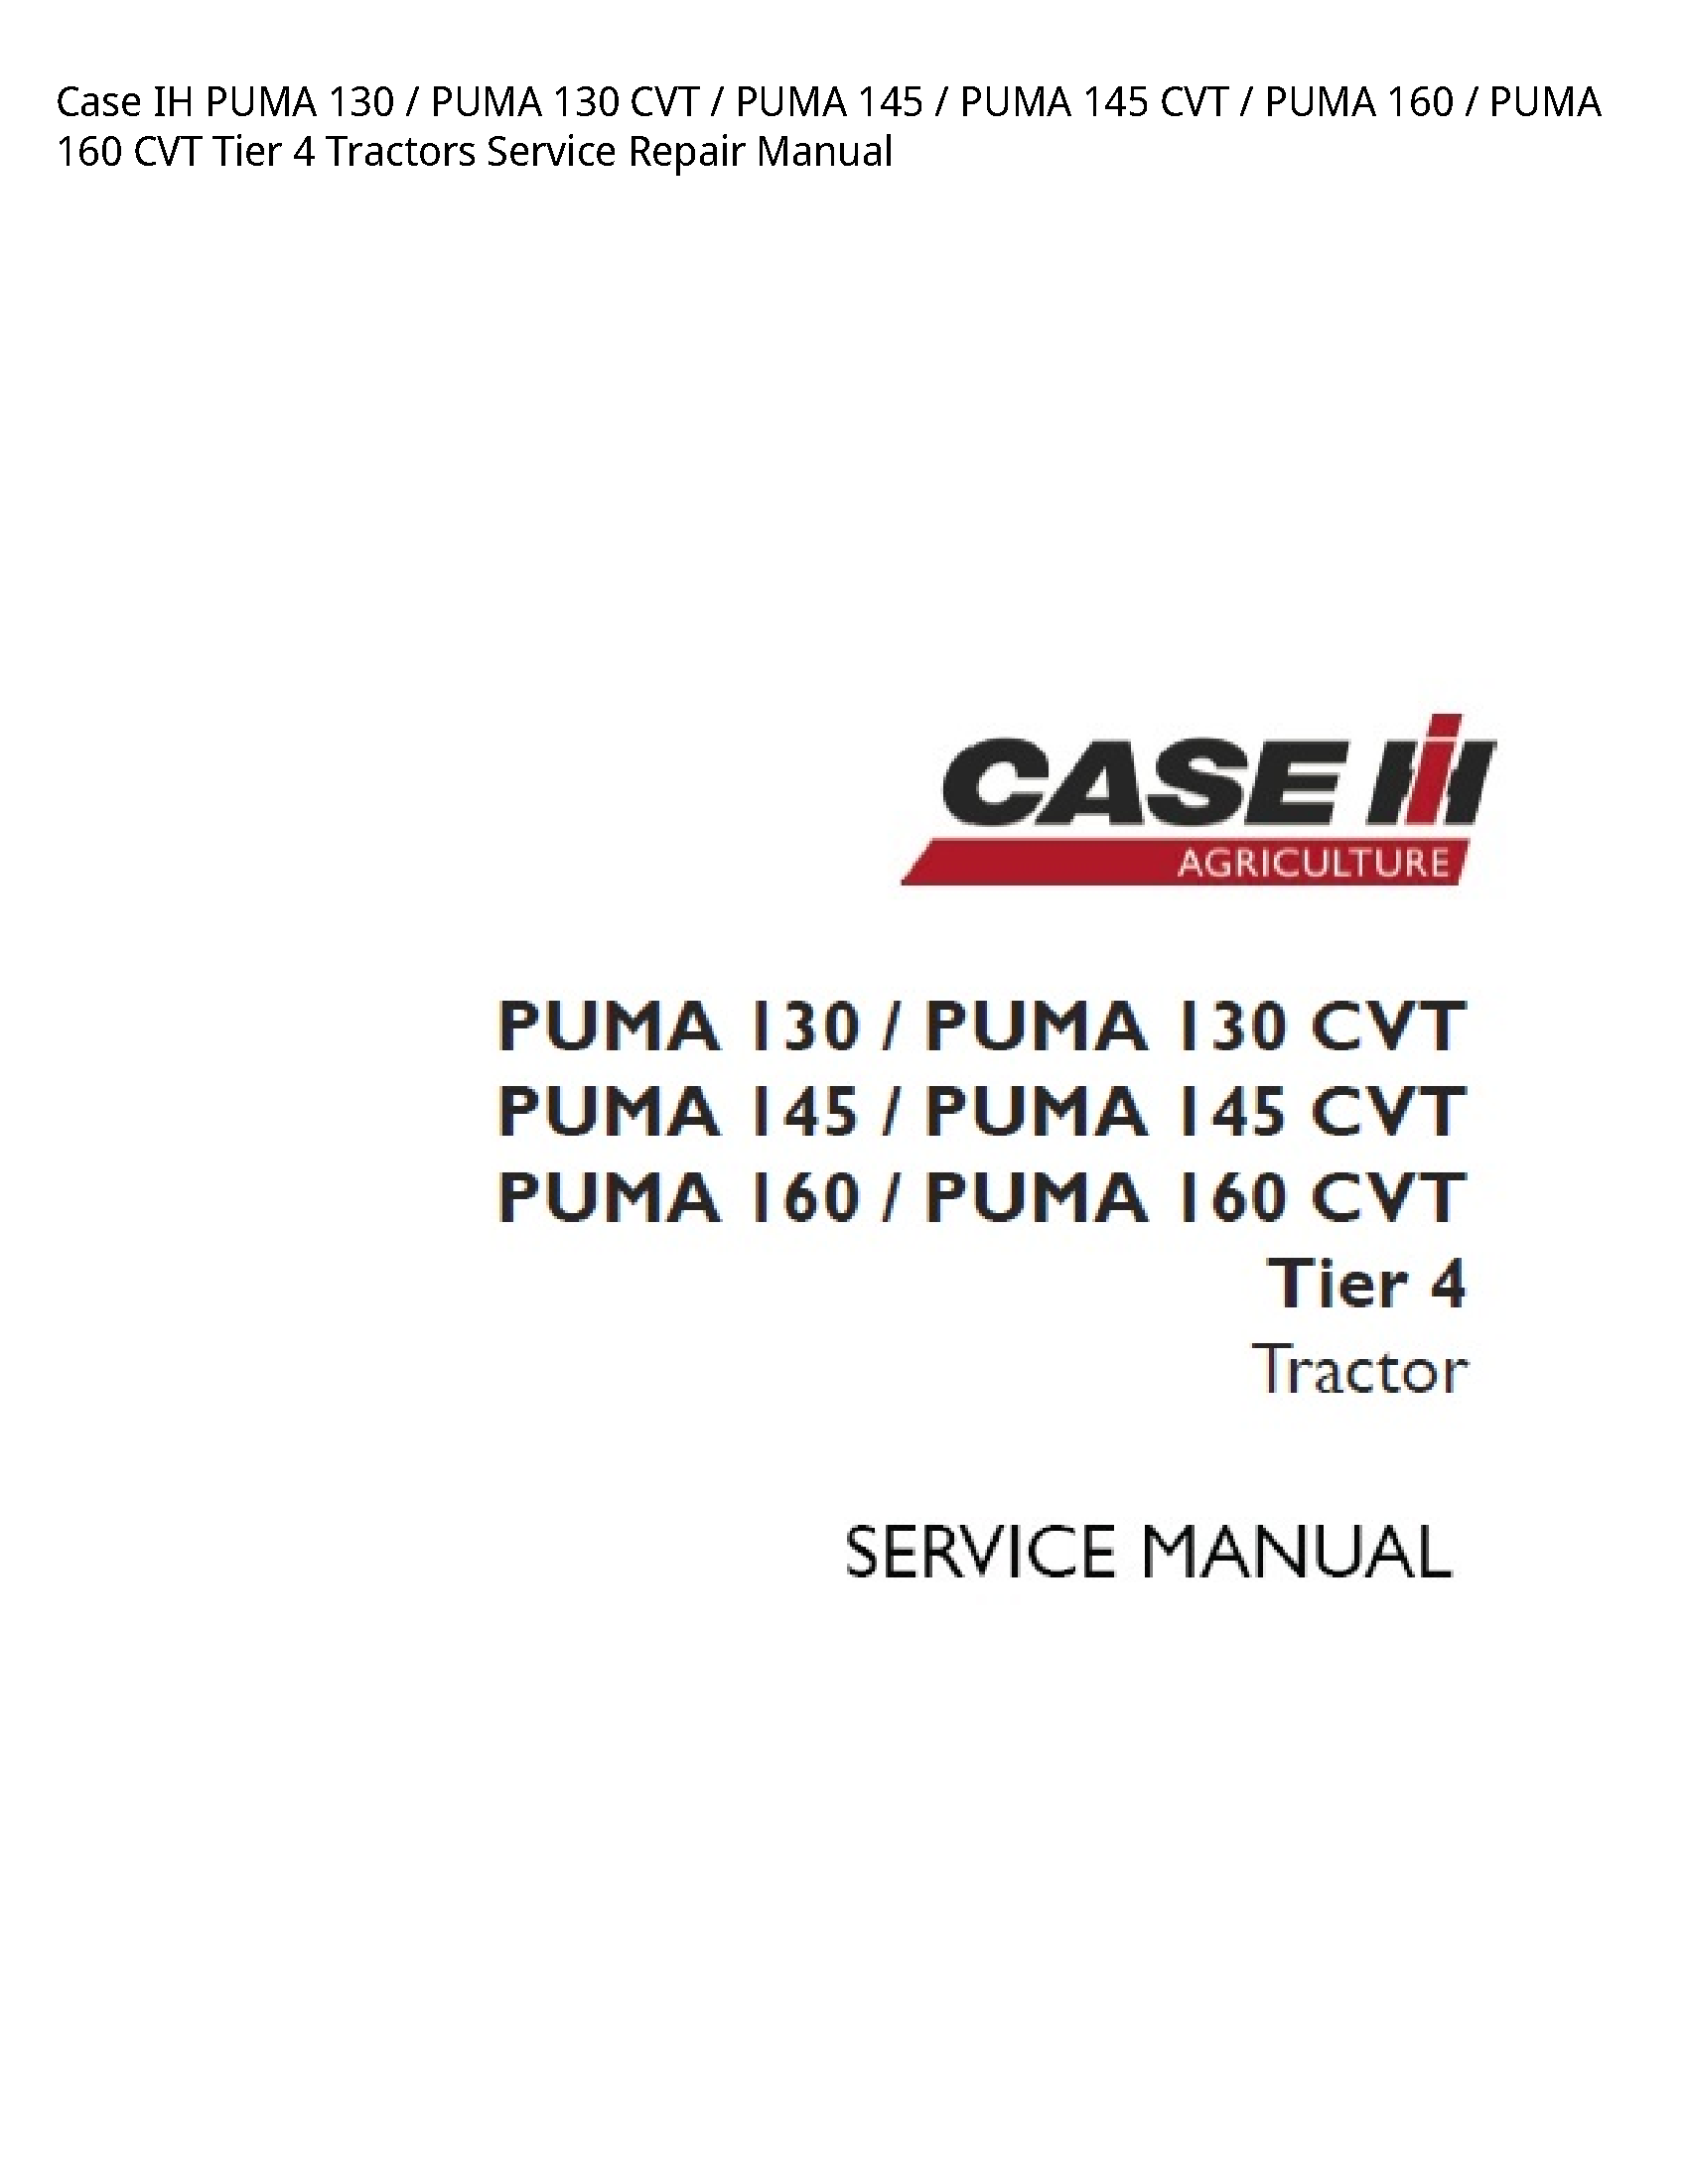 Case/Case IH 130 IH PUMA PUMA CVT PUMA PUMA CVT PUMA PUMA CVT Tier Tractors manual